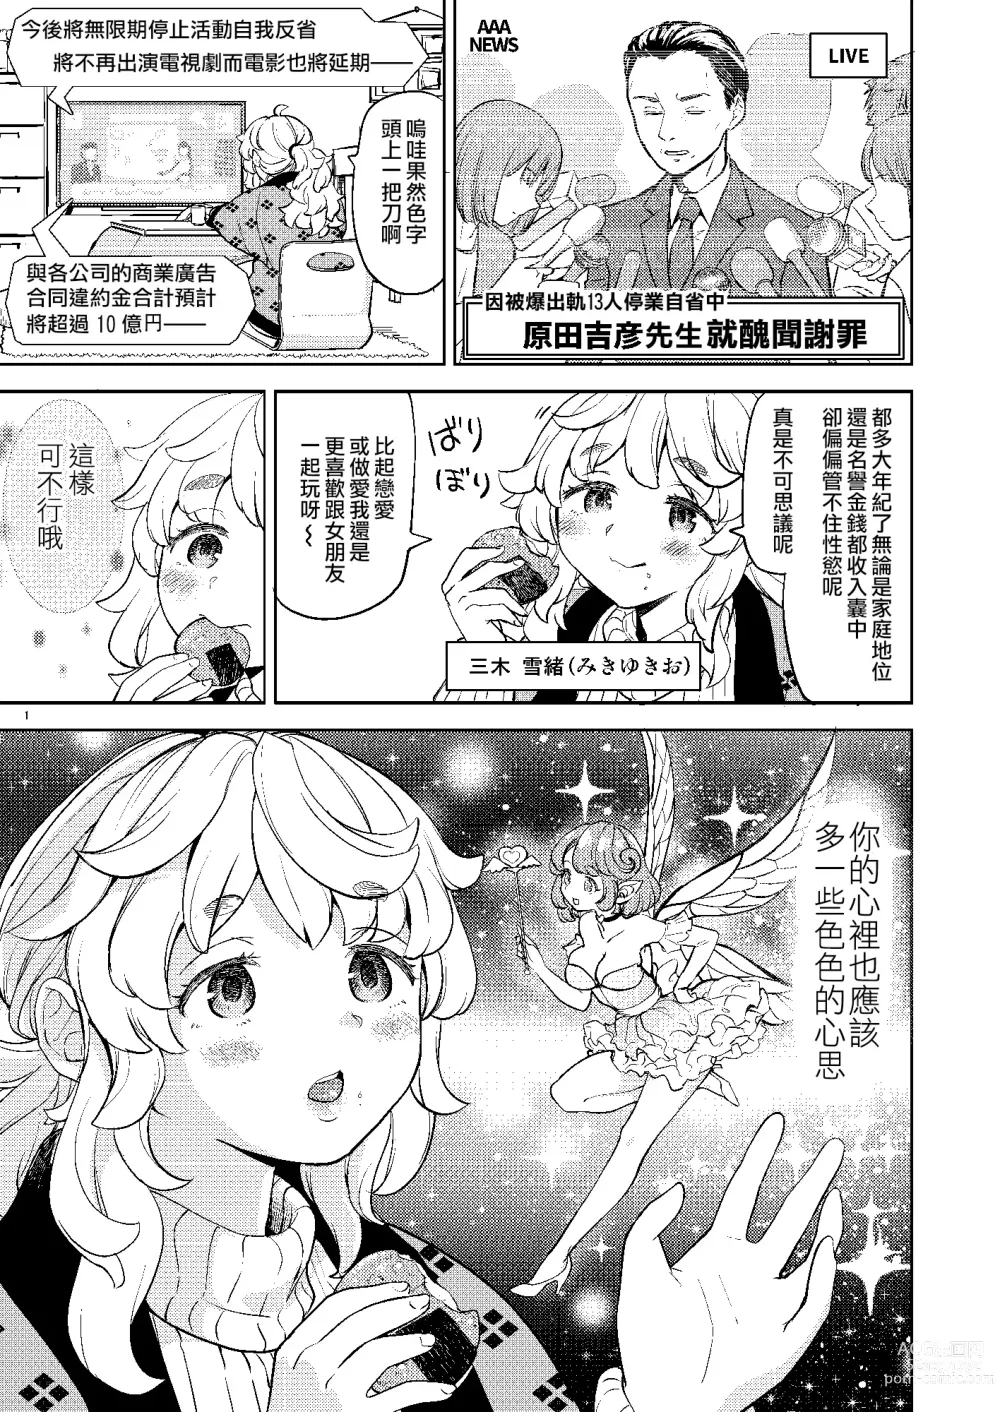 Page 3 of doujinshi 愛のようせい